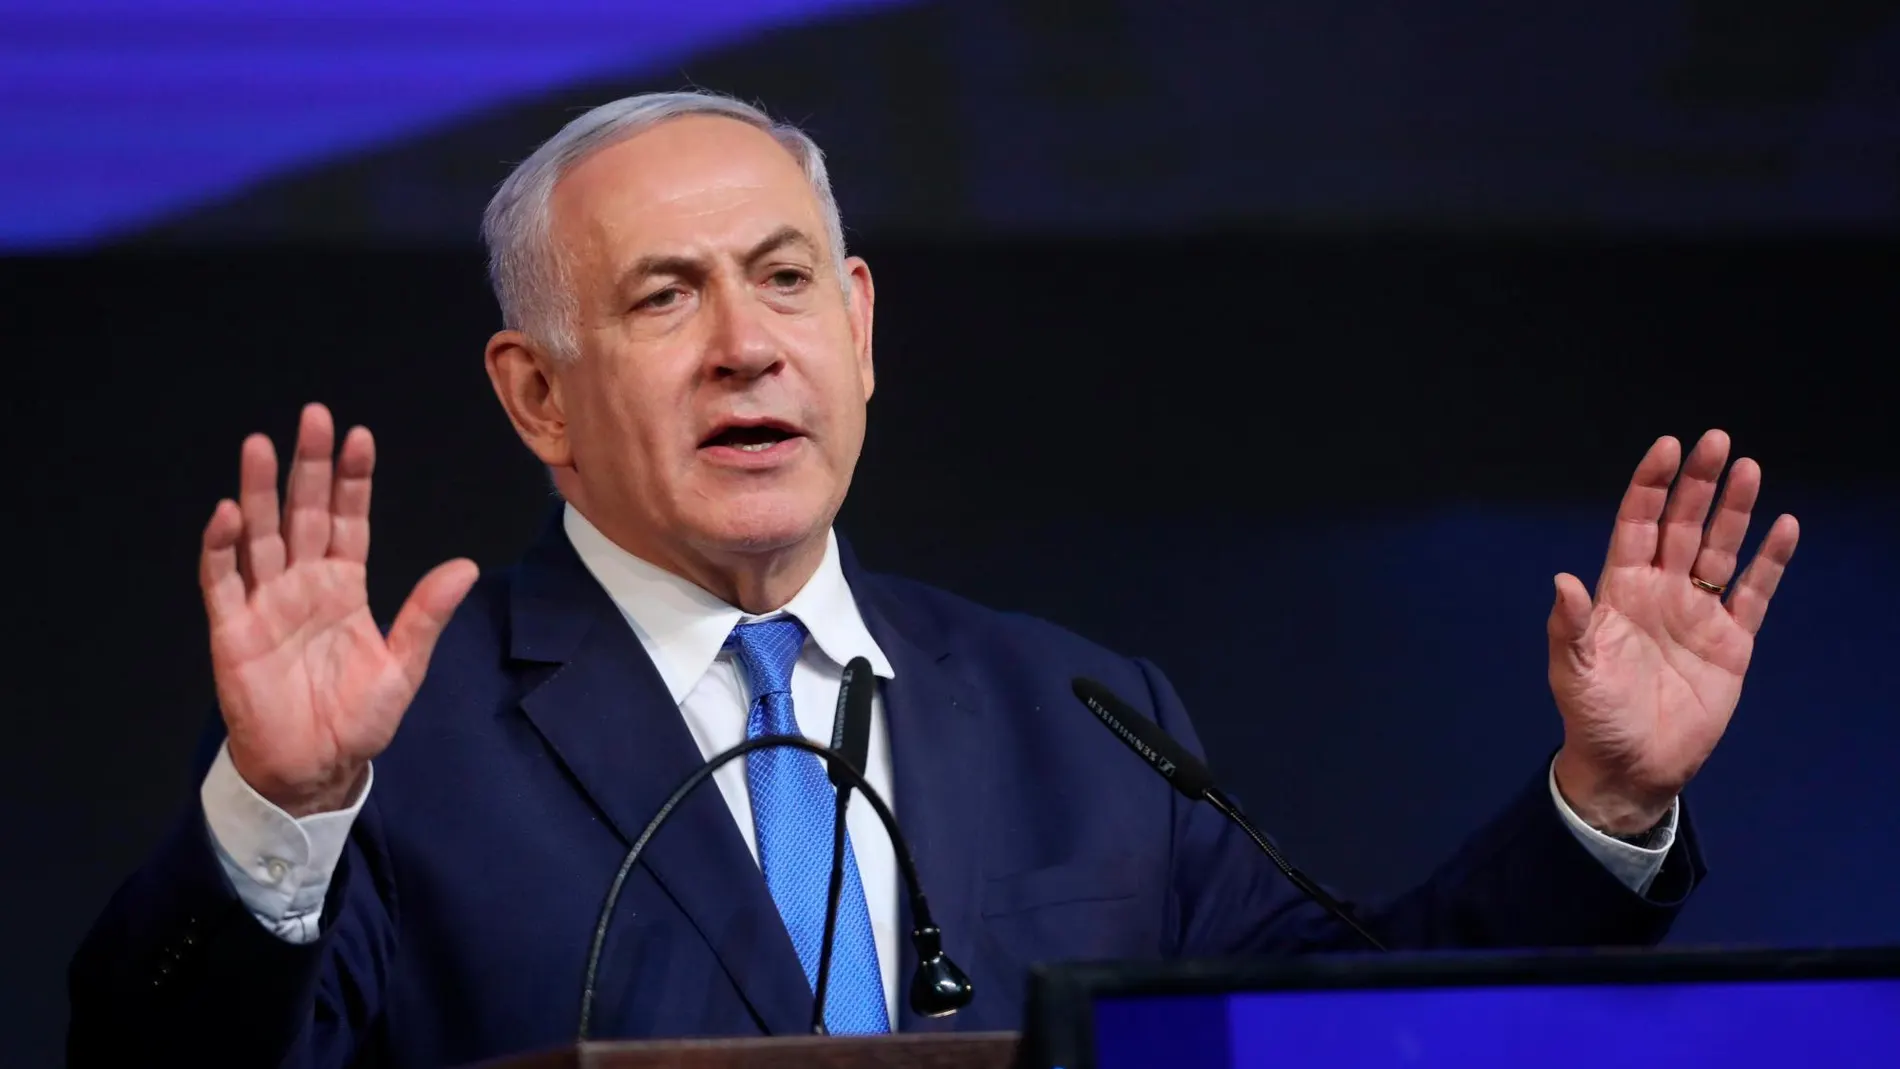 Netanyahu, anoche, tras conocerse los resultados electorales